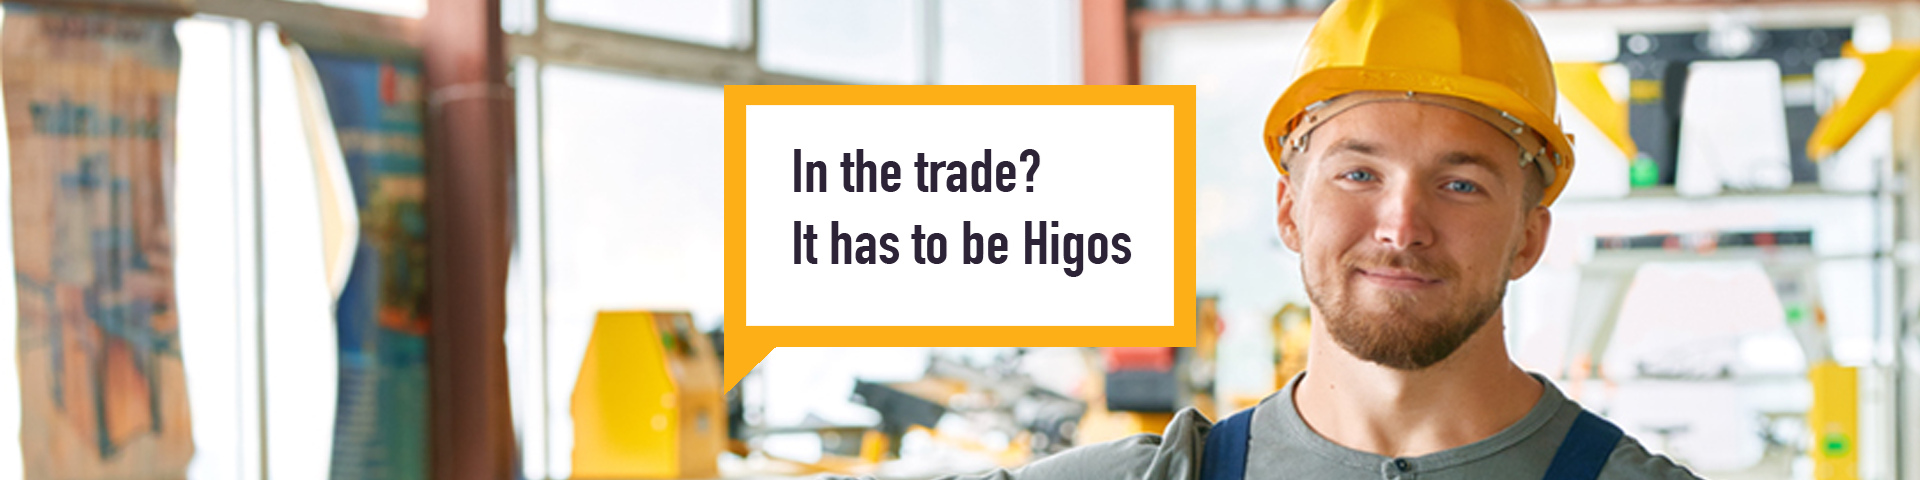 Higos Commercial insurance tradesman